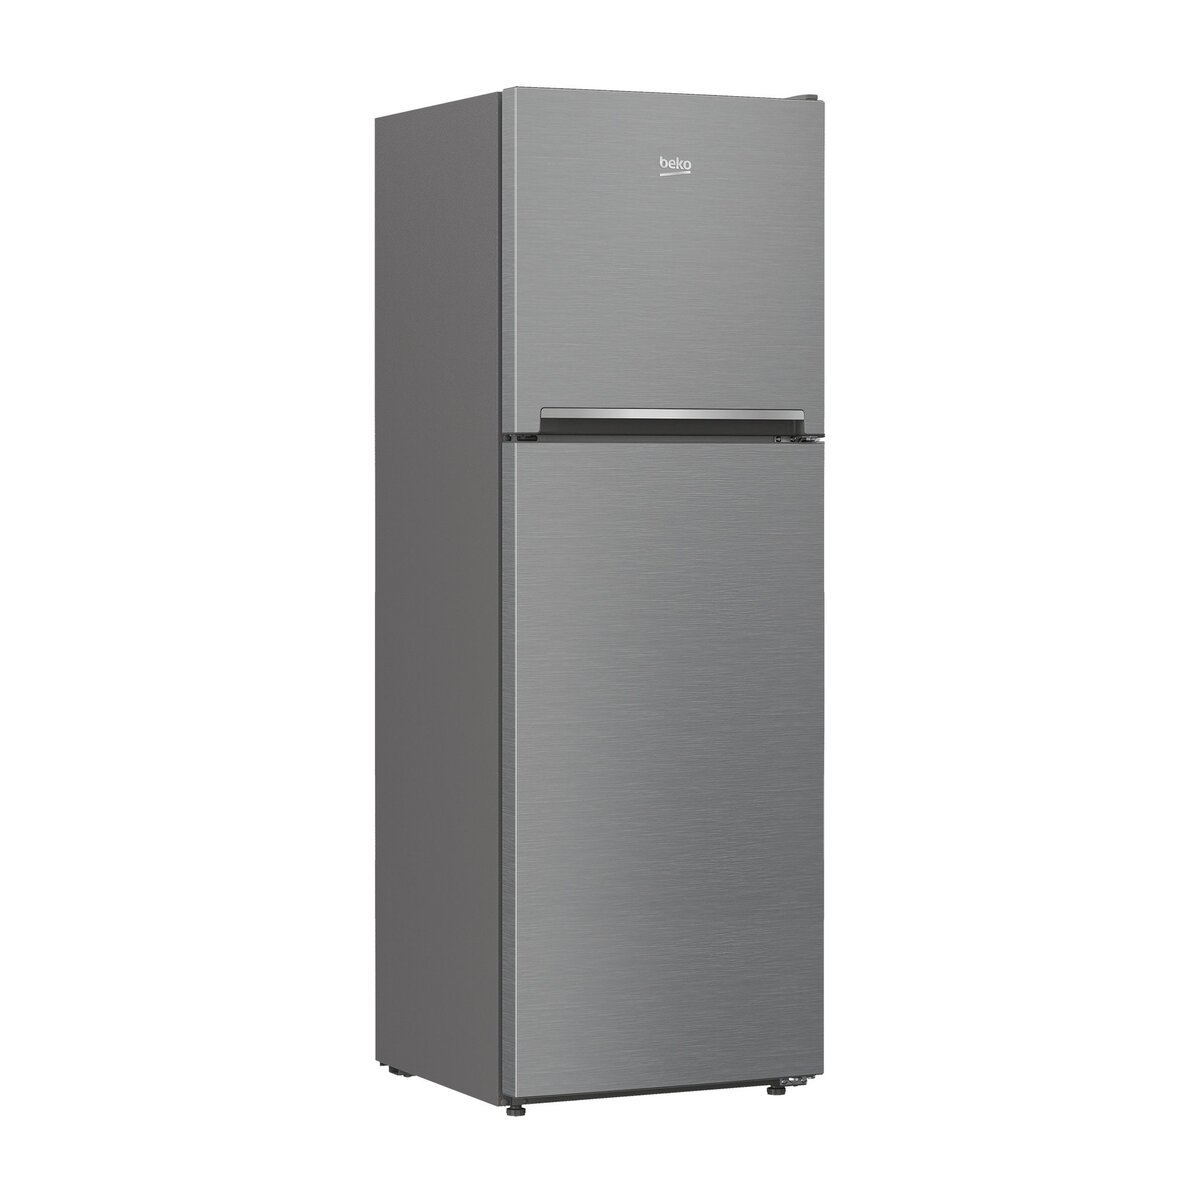 BEKO Réfrigérateur Double porte RDNT360I20BS - 321 L - Froid No Frost